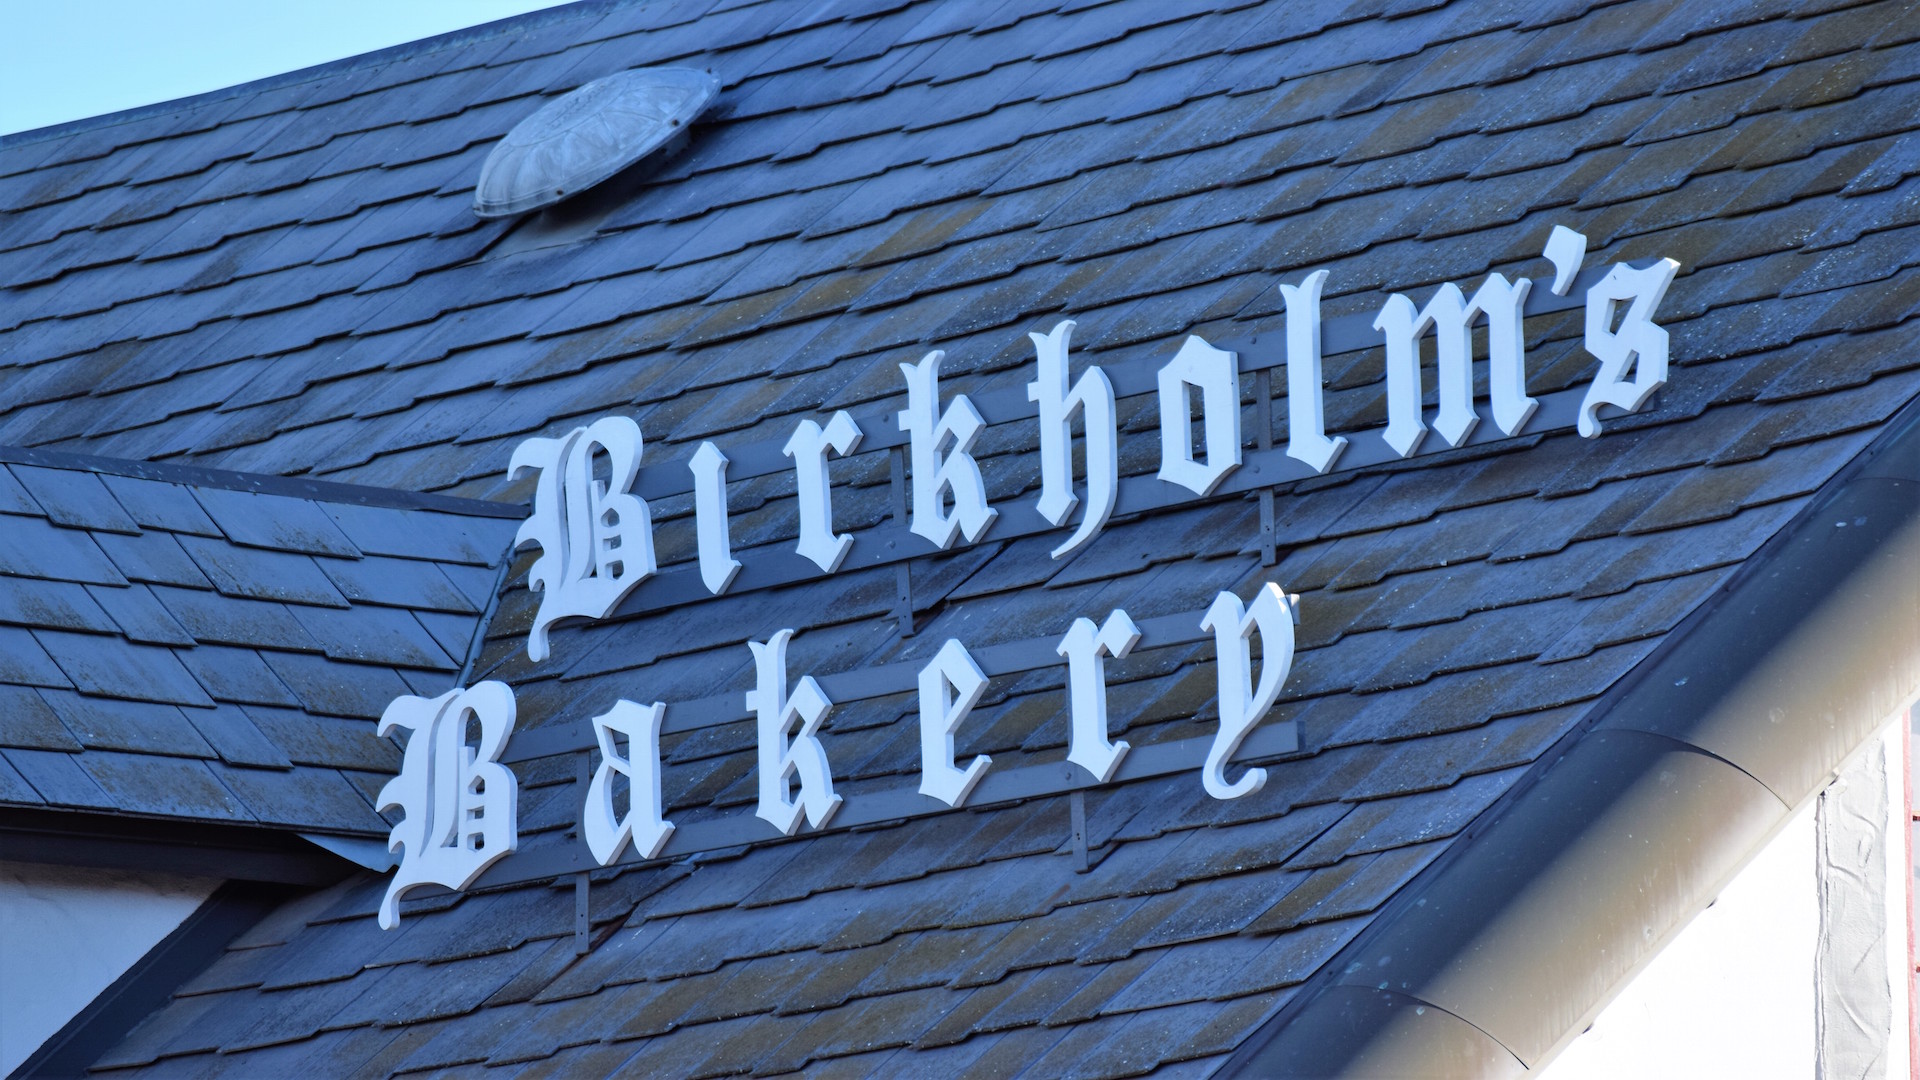 Birkholm’s Bakery & Cafe